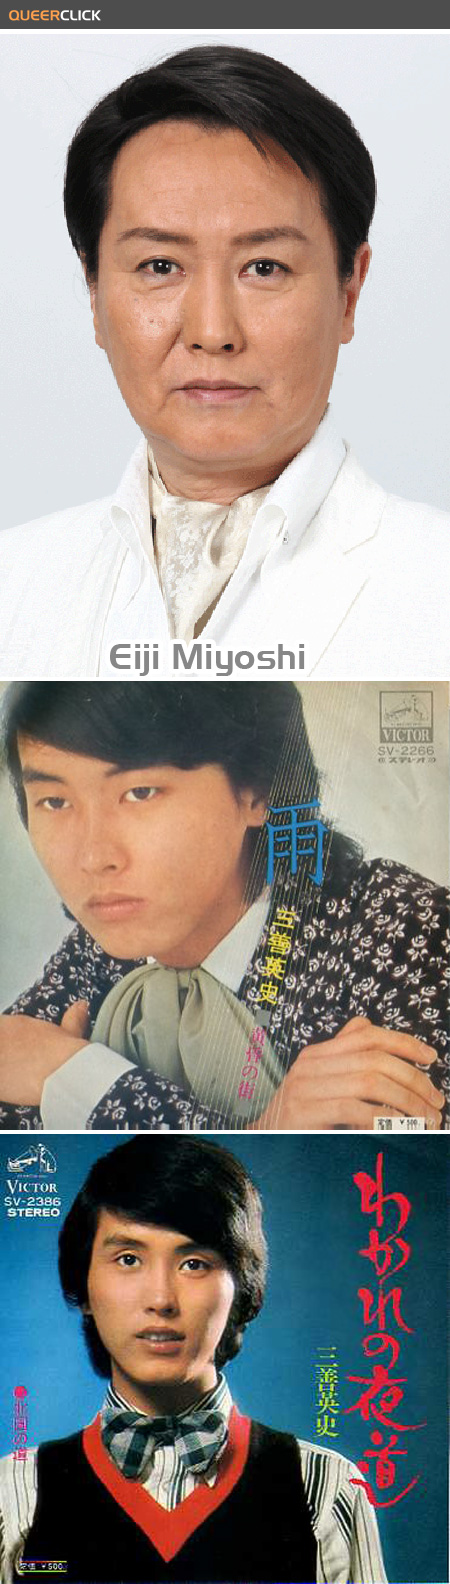 eiji_miyoshi_gay.jpg